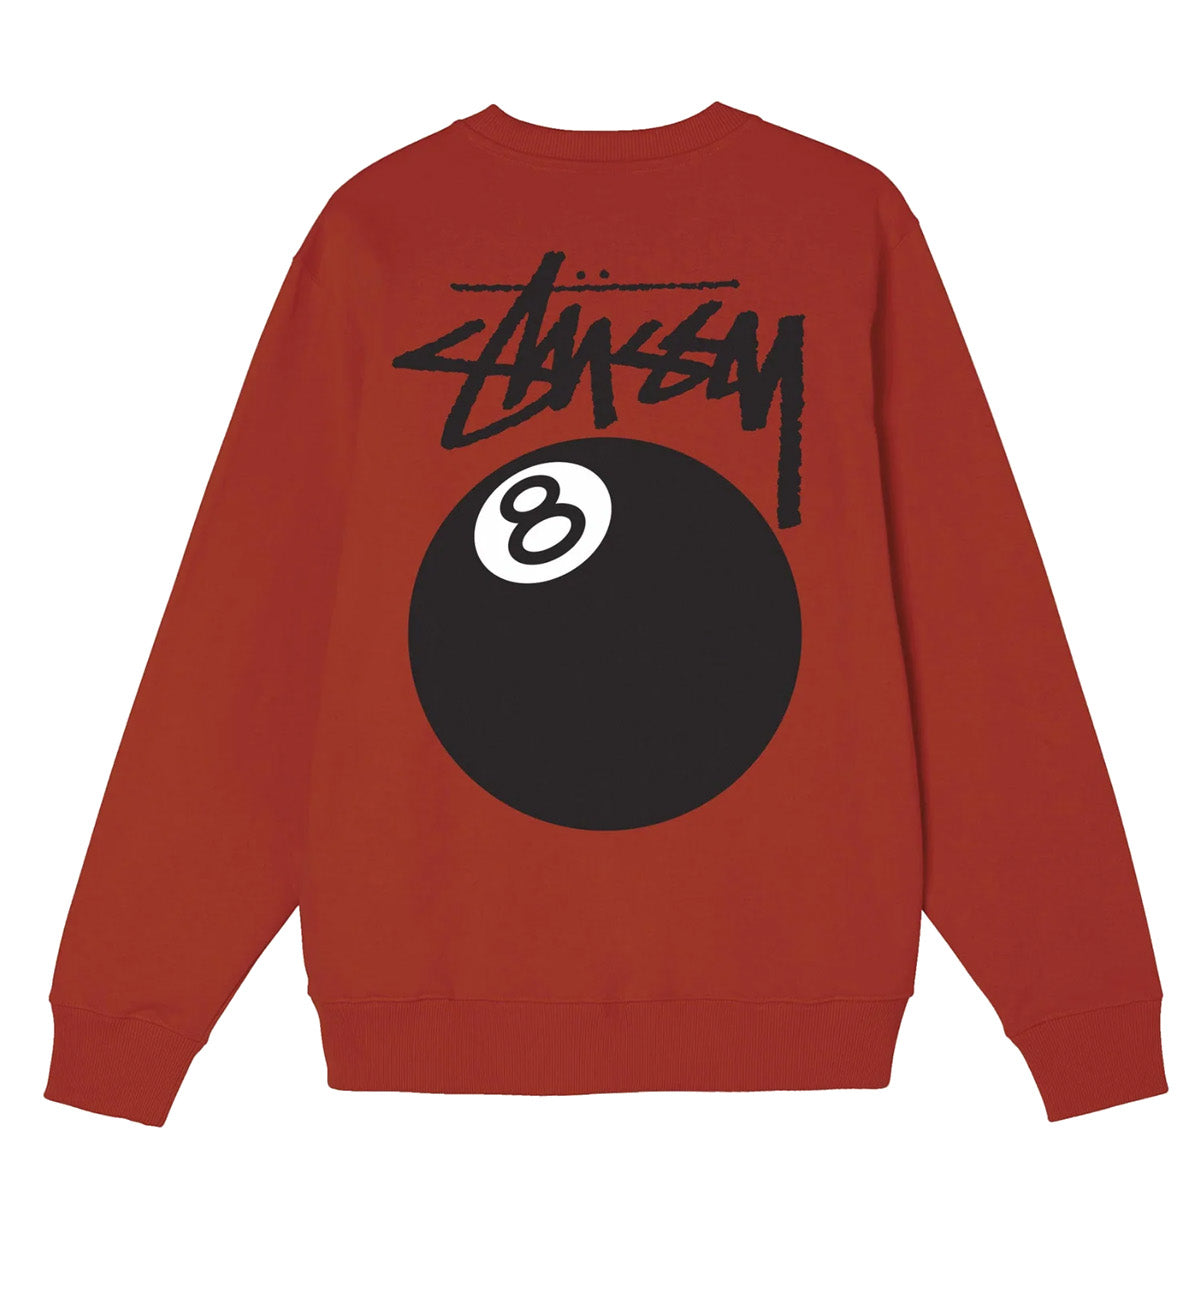 Stussy 8 Ball Sweatshirt (Maroon)